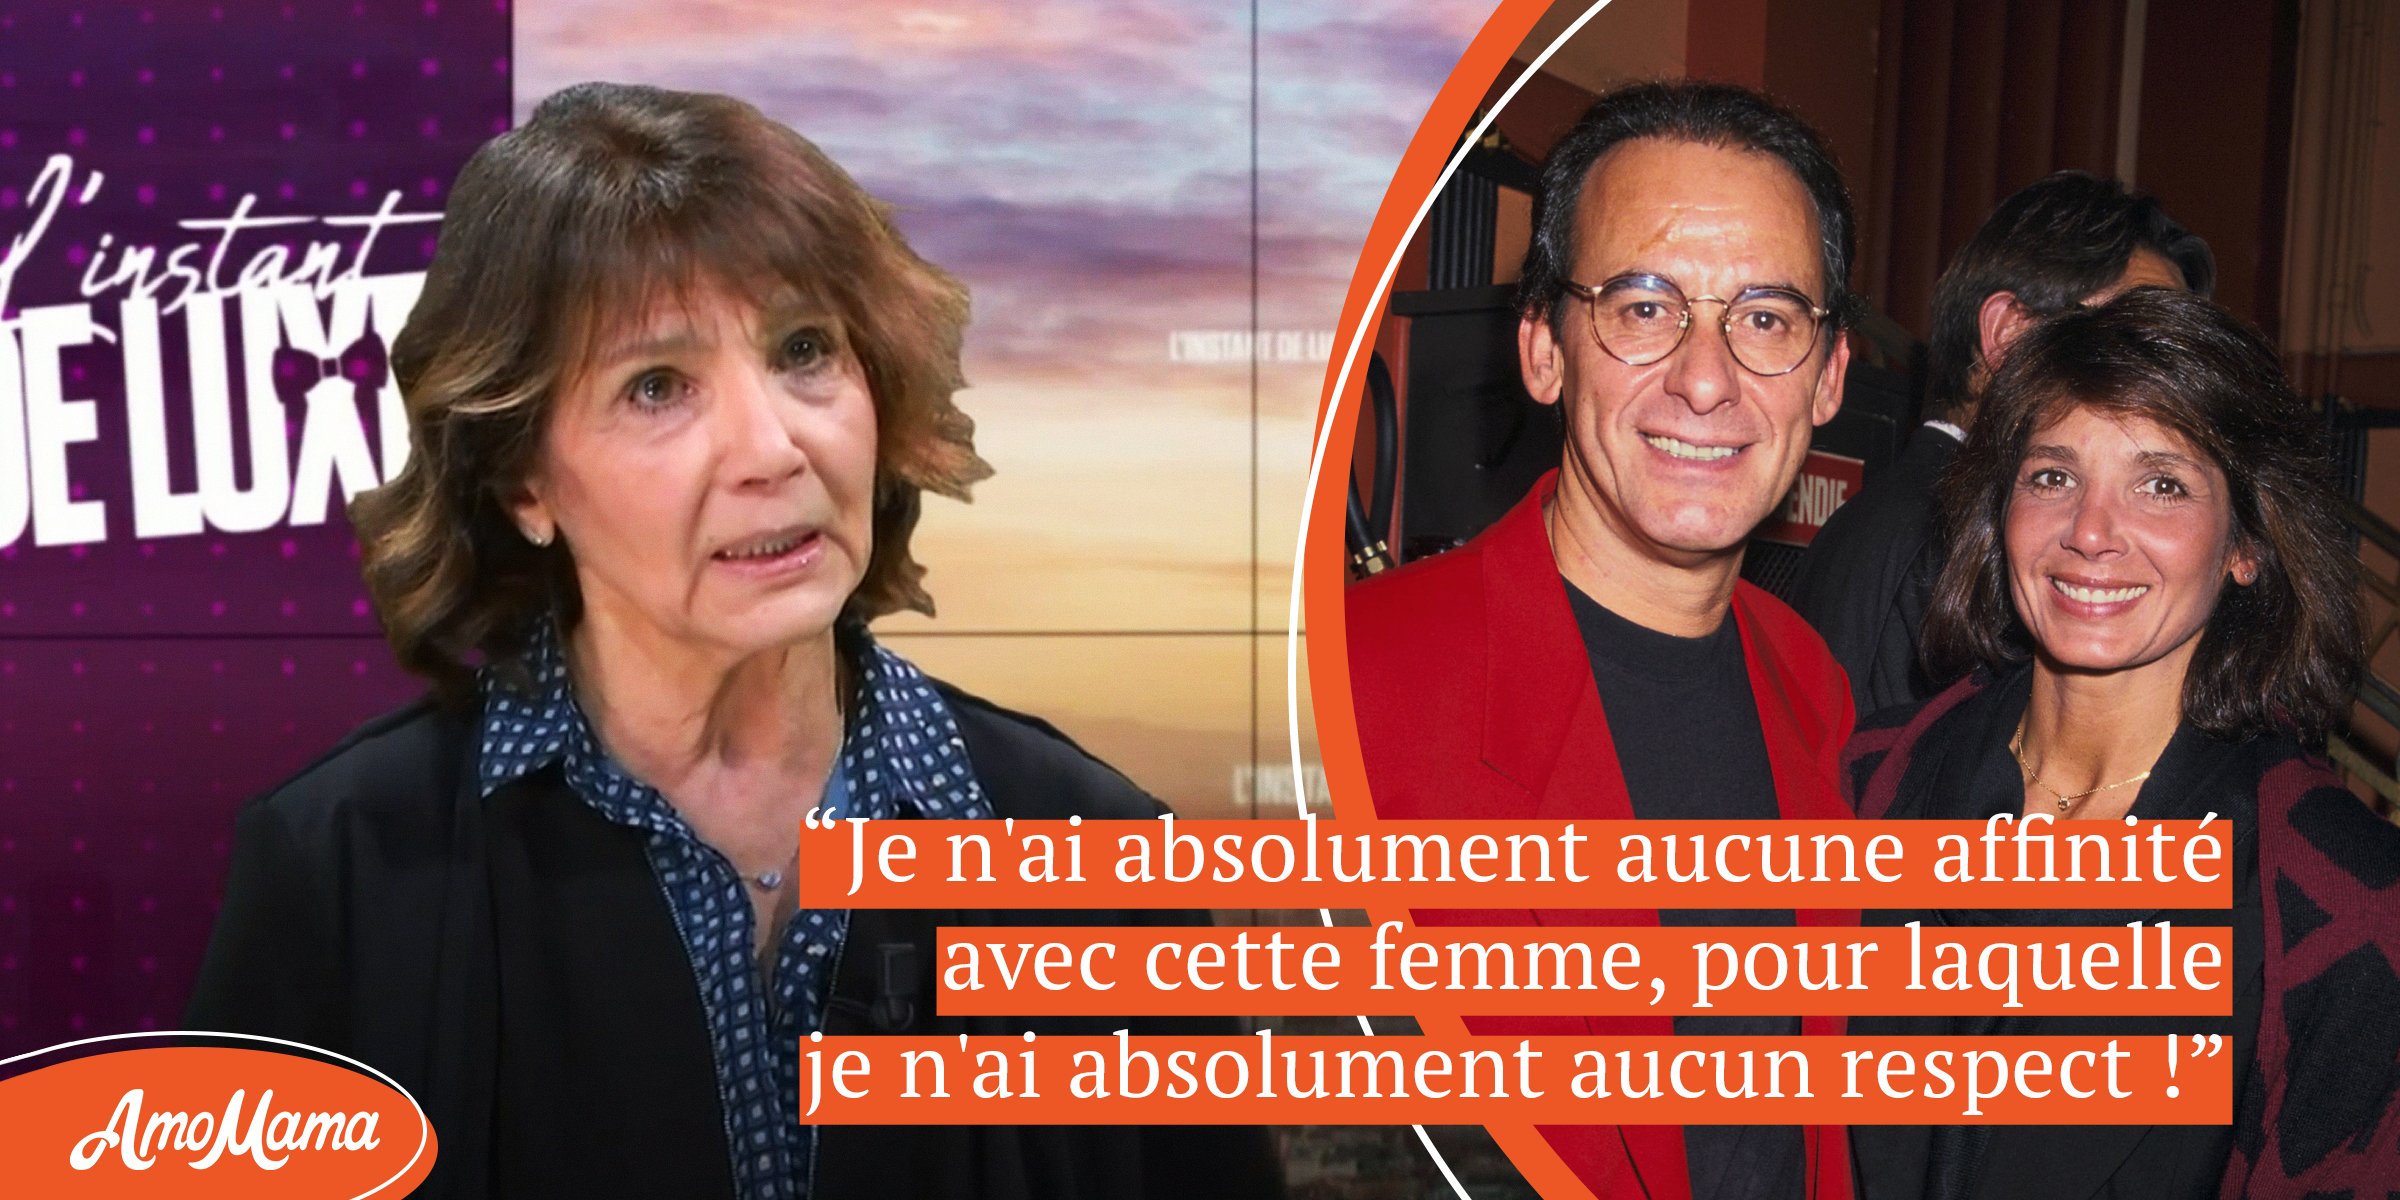 À 75 ans, l’ex de Michel Fugain “ne respecte pas” sa nouvelle femme – Quittée par lui après le décès de leur fille à 22 ans, elle est toujours seule